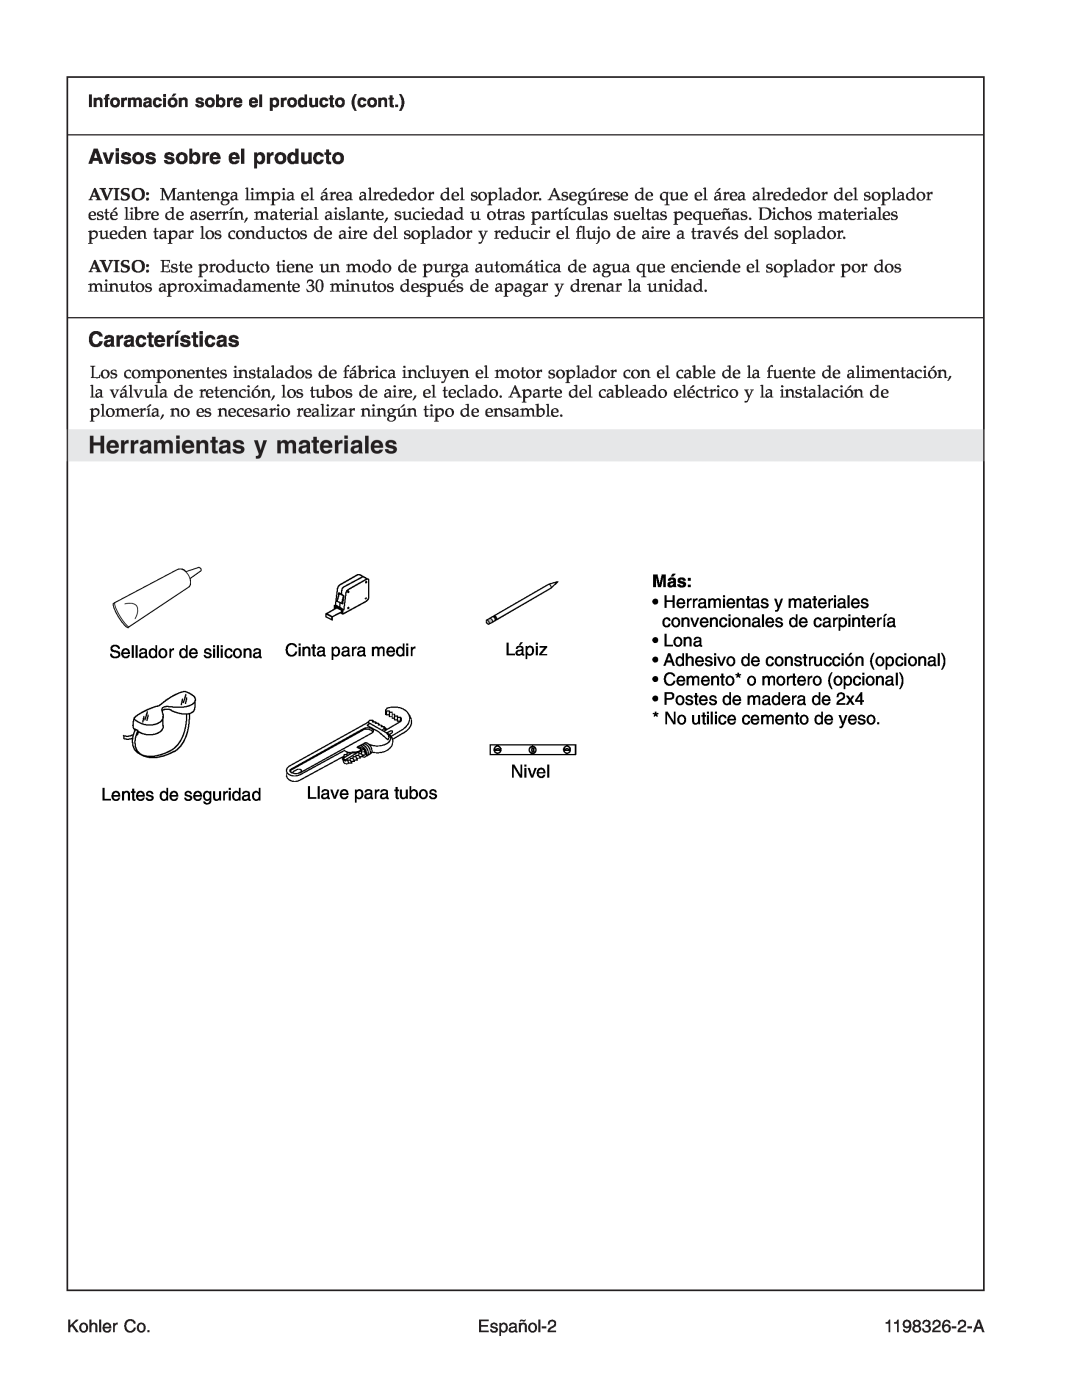 Kohler 1198326-2-A manual Herramientas y materiales, Avisos sobre el producto, Características, Nivel, Español-2, Kohler Co 